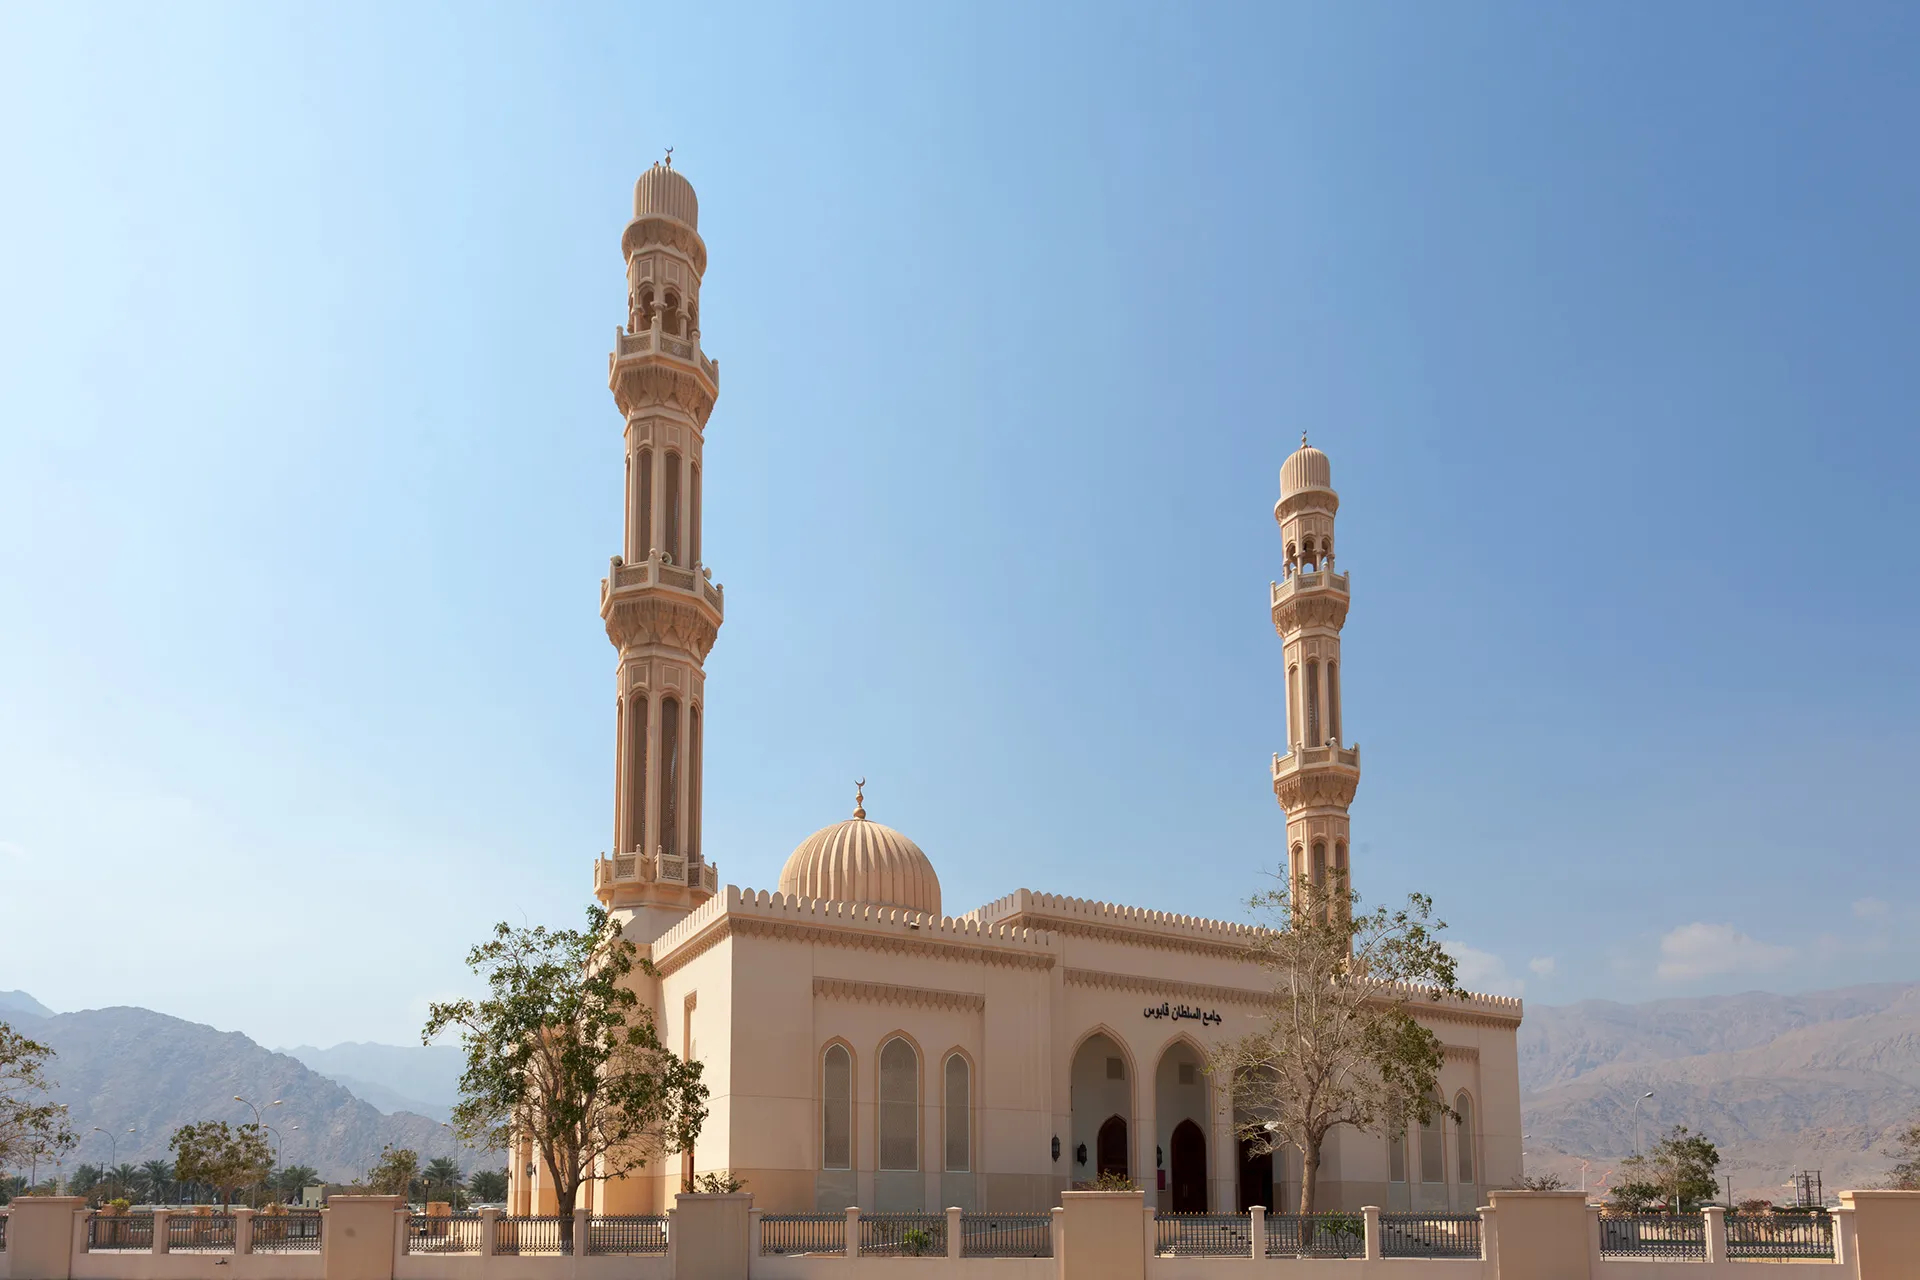 Aussenfassade einer muslimischen Moschee